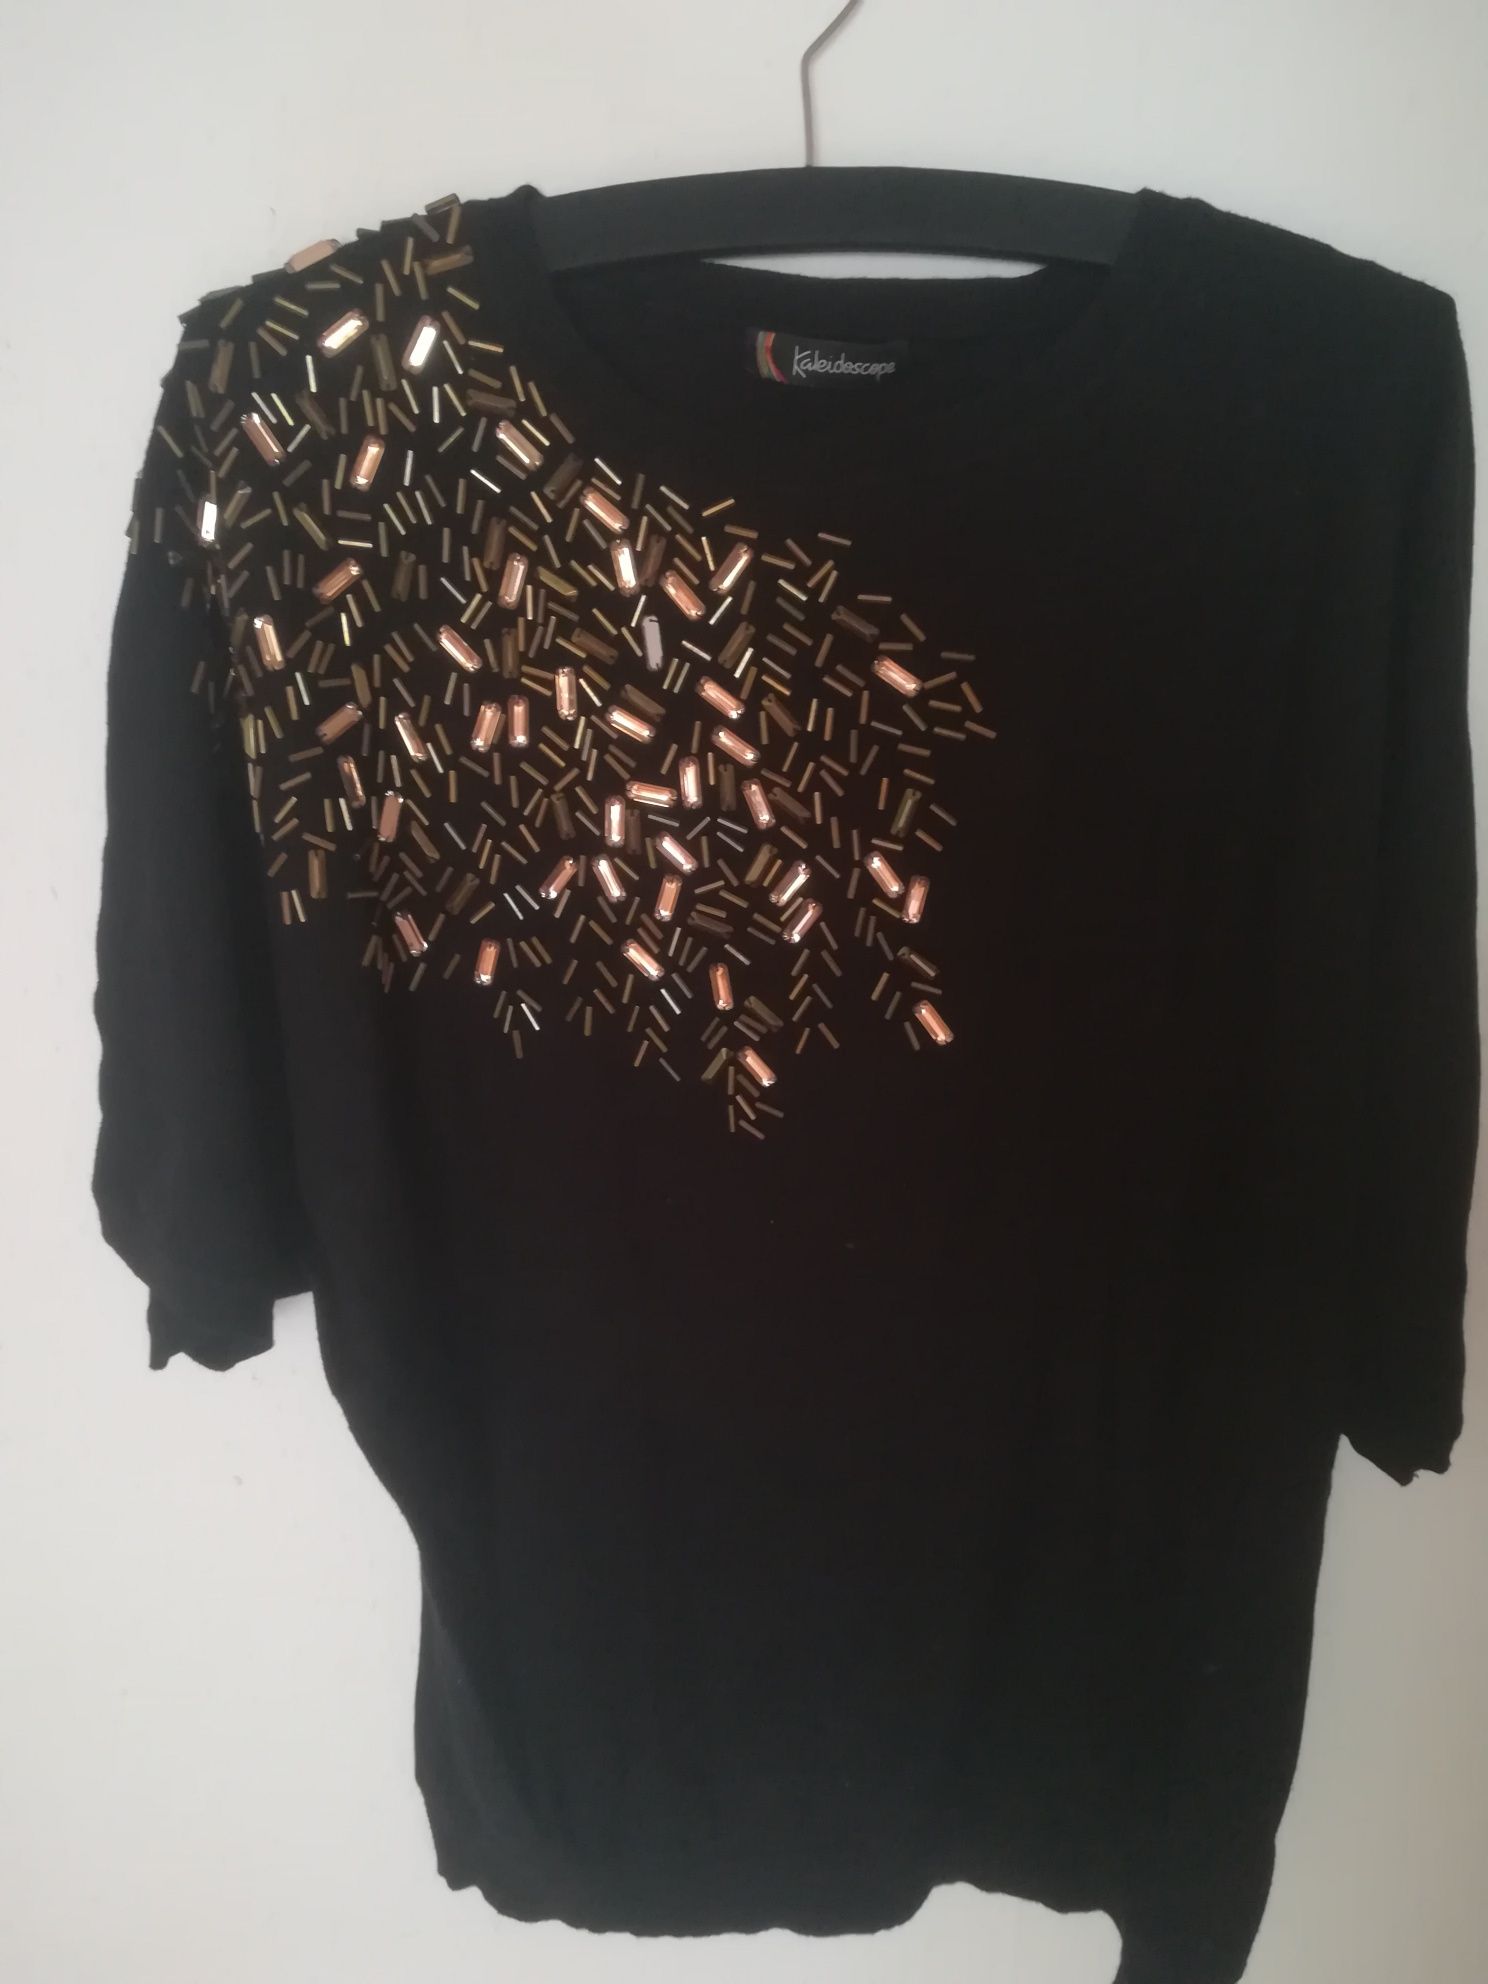 Kaleidoscope dzianinowa bluzka sweter damski czarny z kamieniami L 40